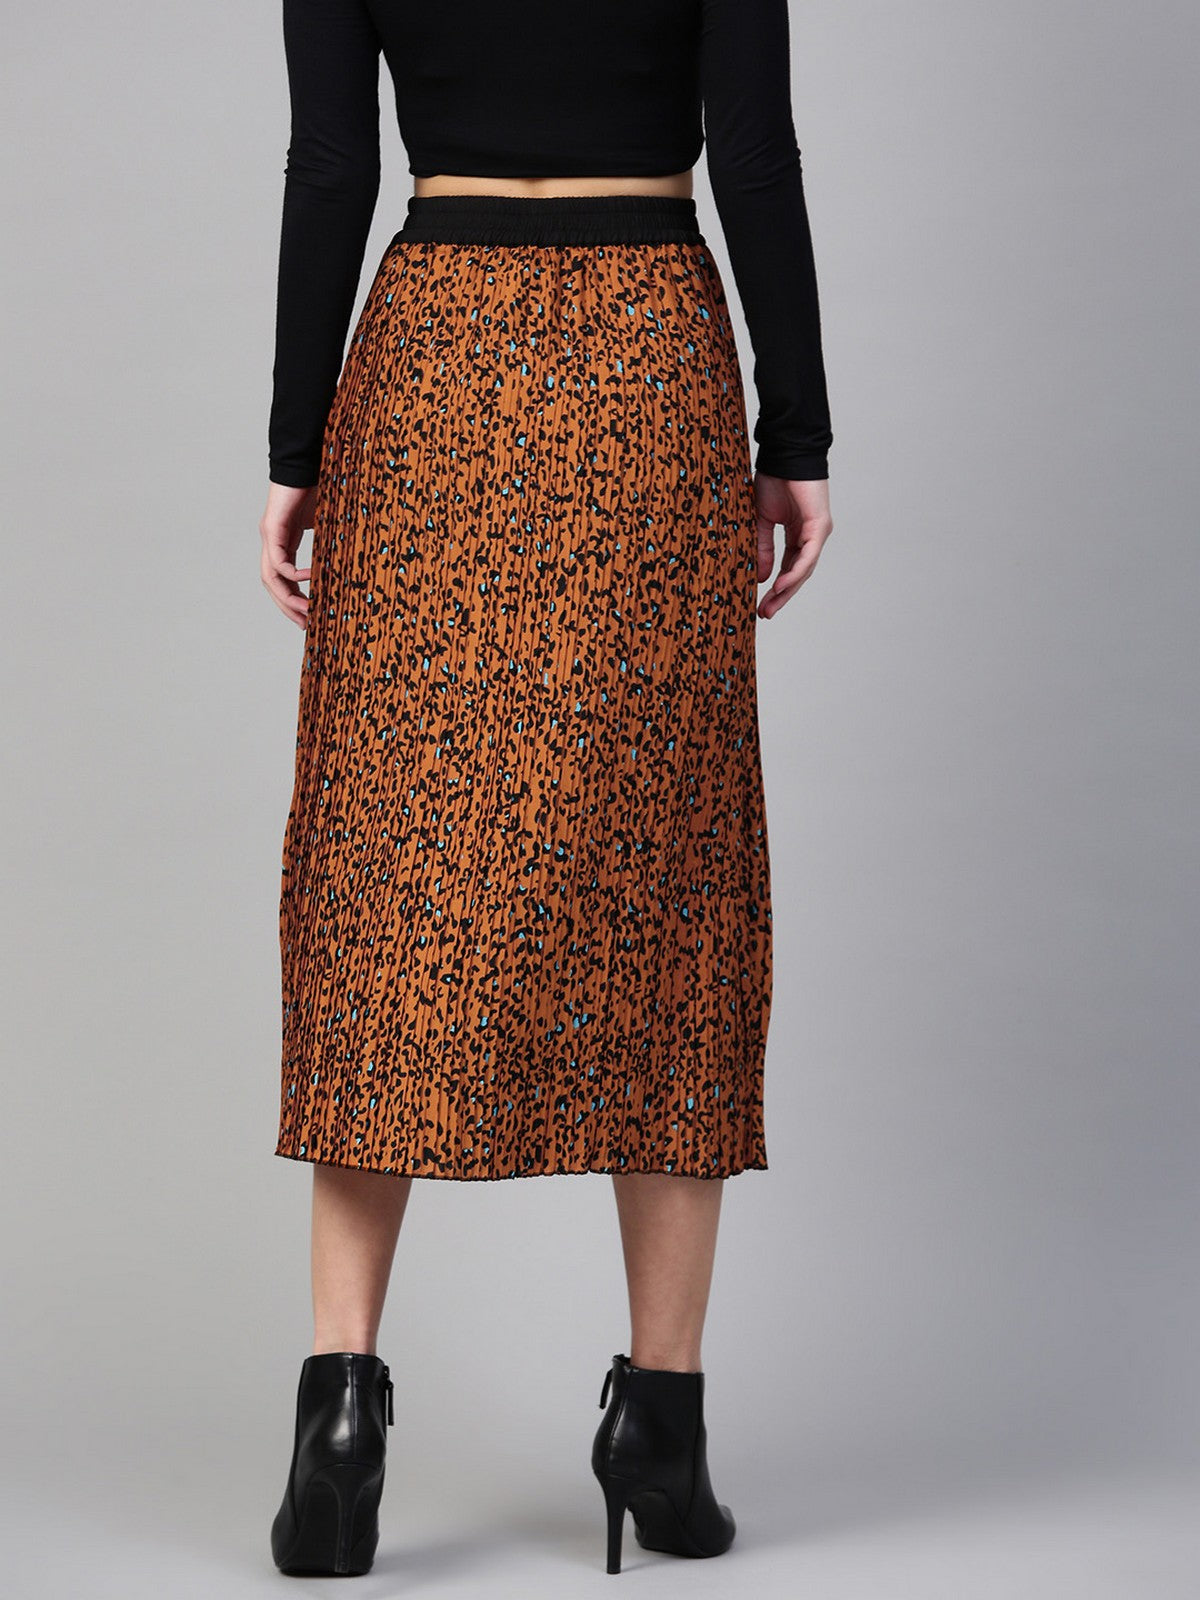 Animal Printed Pleated Skirt